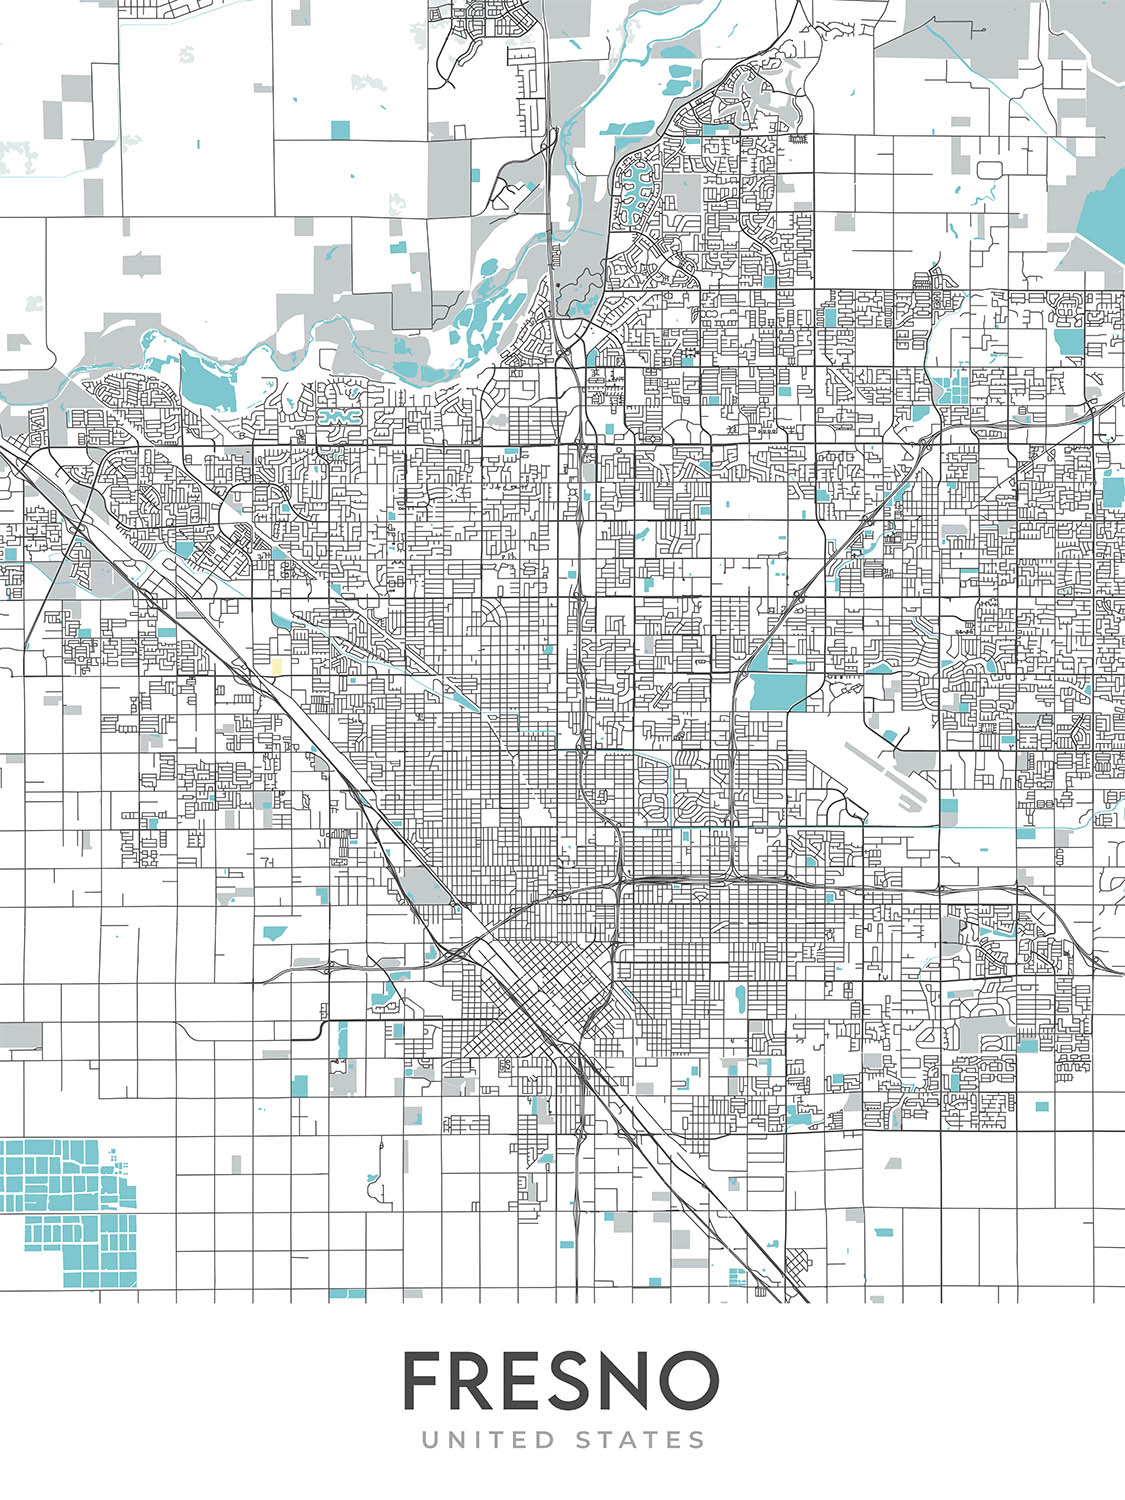 Plan de la ville moderne de Fresno, Californie : centre-ville, zoo de Fresno Chaffee, Woodward Park, Fig Garden Village, Save Mart Center